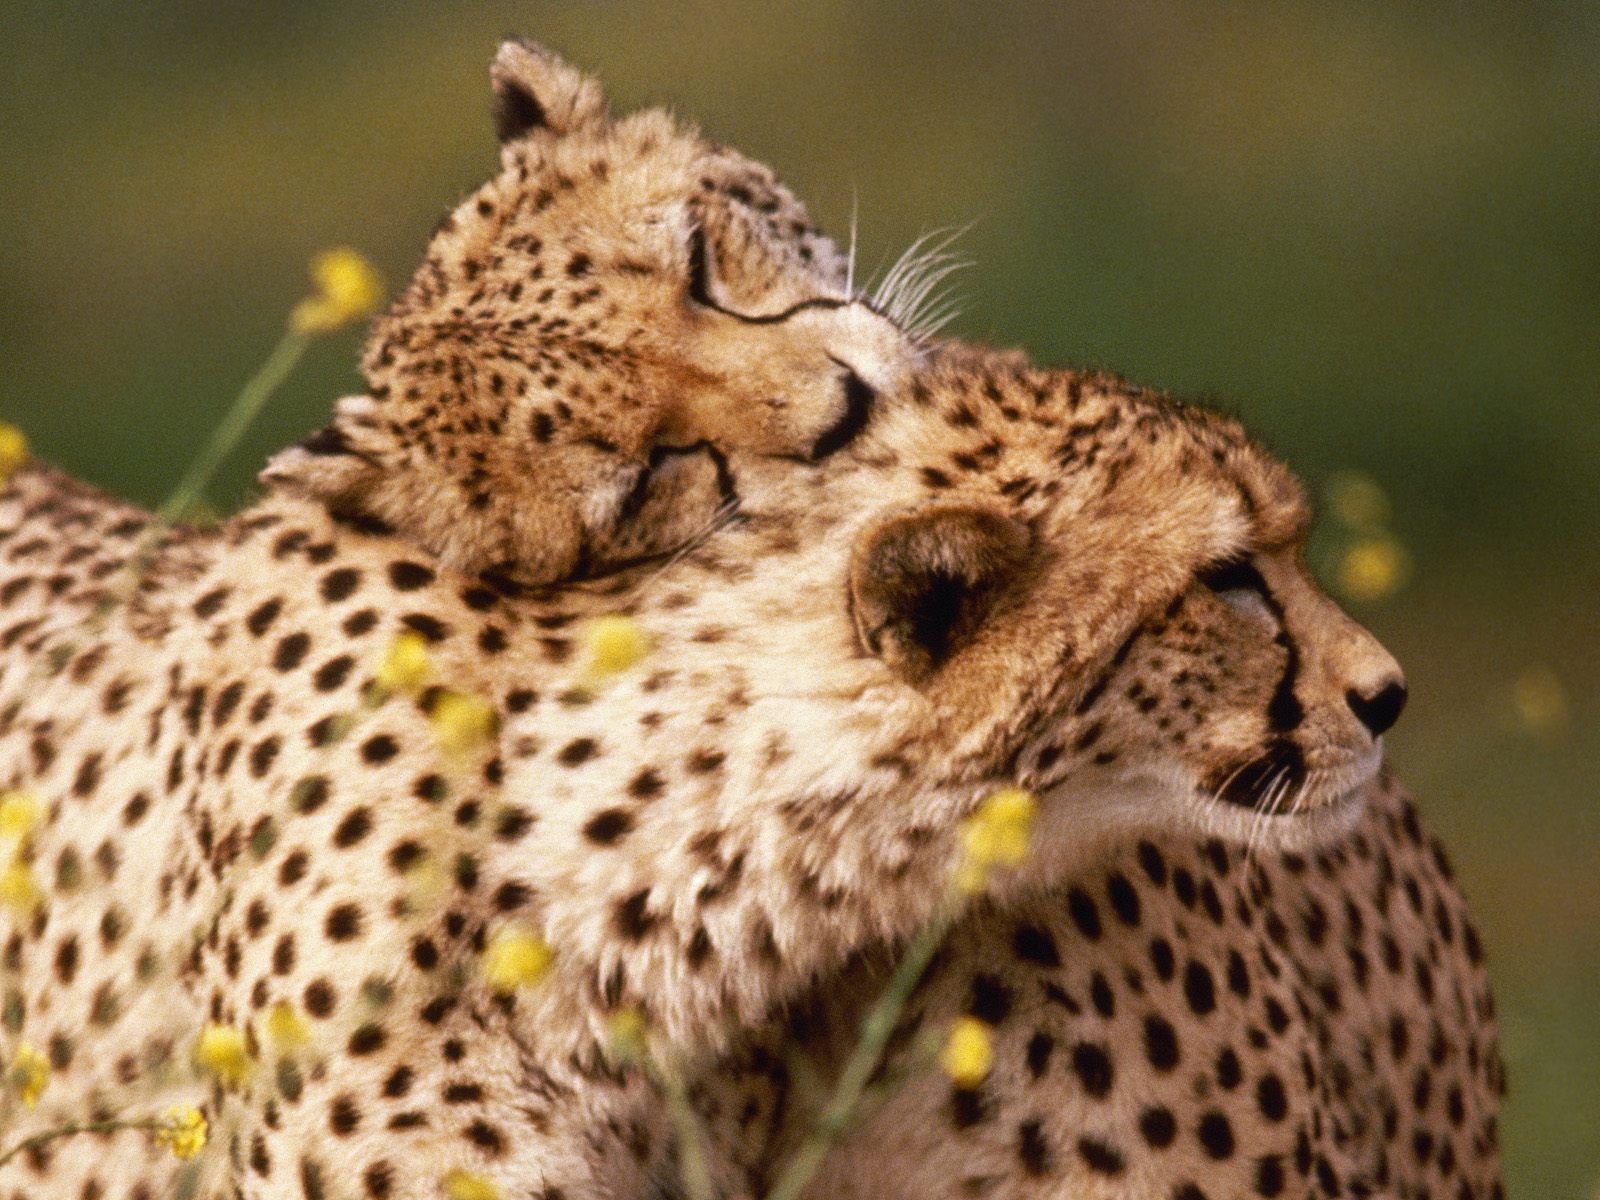 world-wildlife-adventures: affectionate_cheetahs